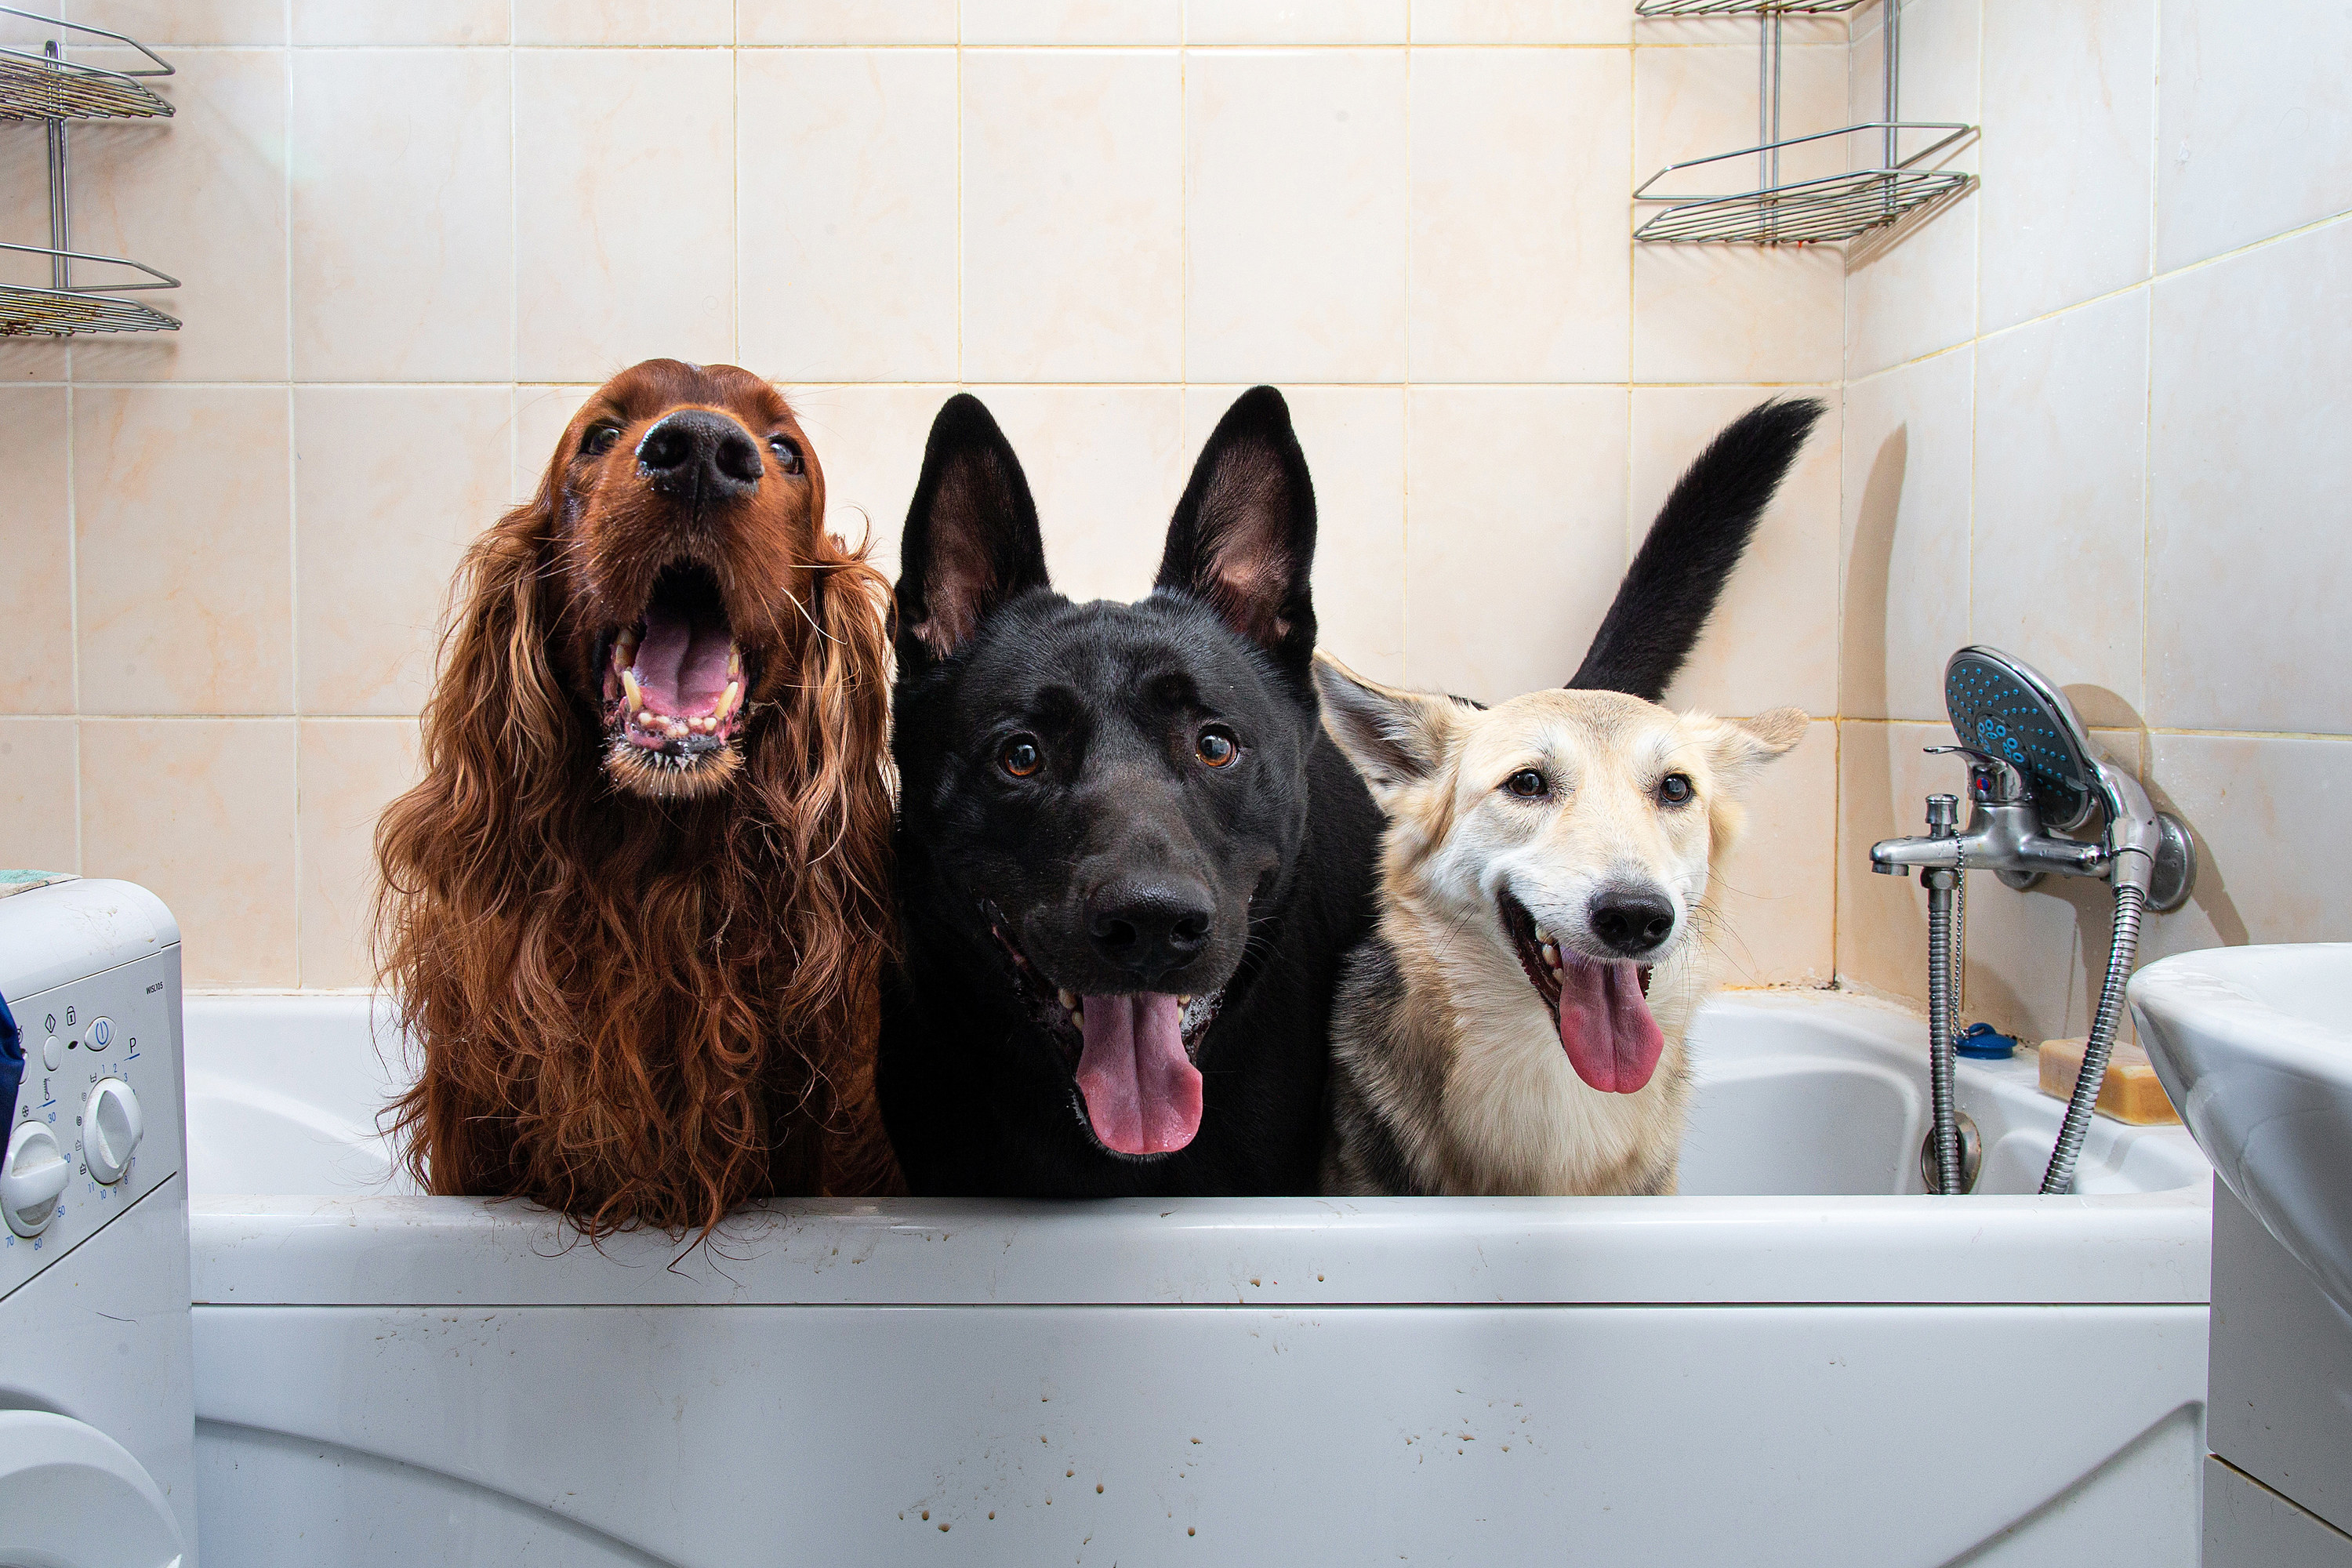 Three dogs inside a tub